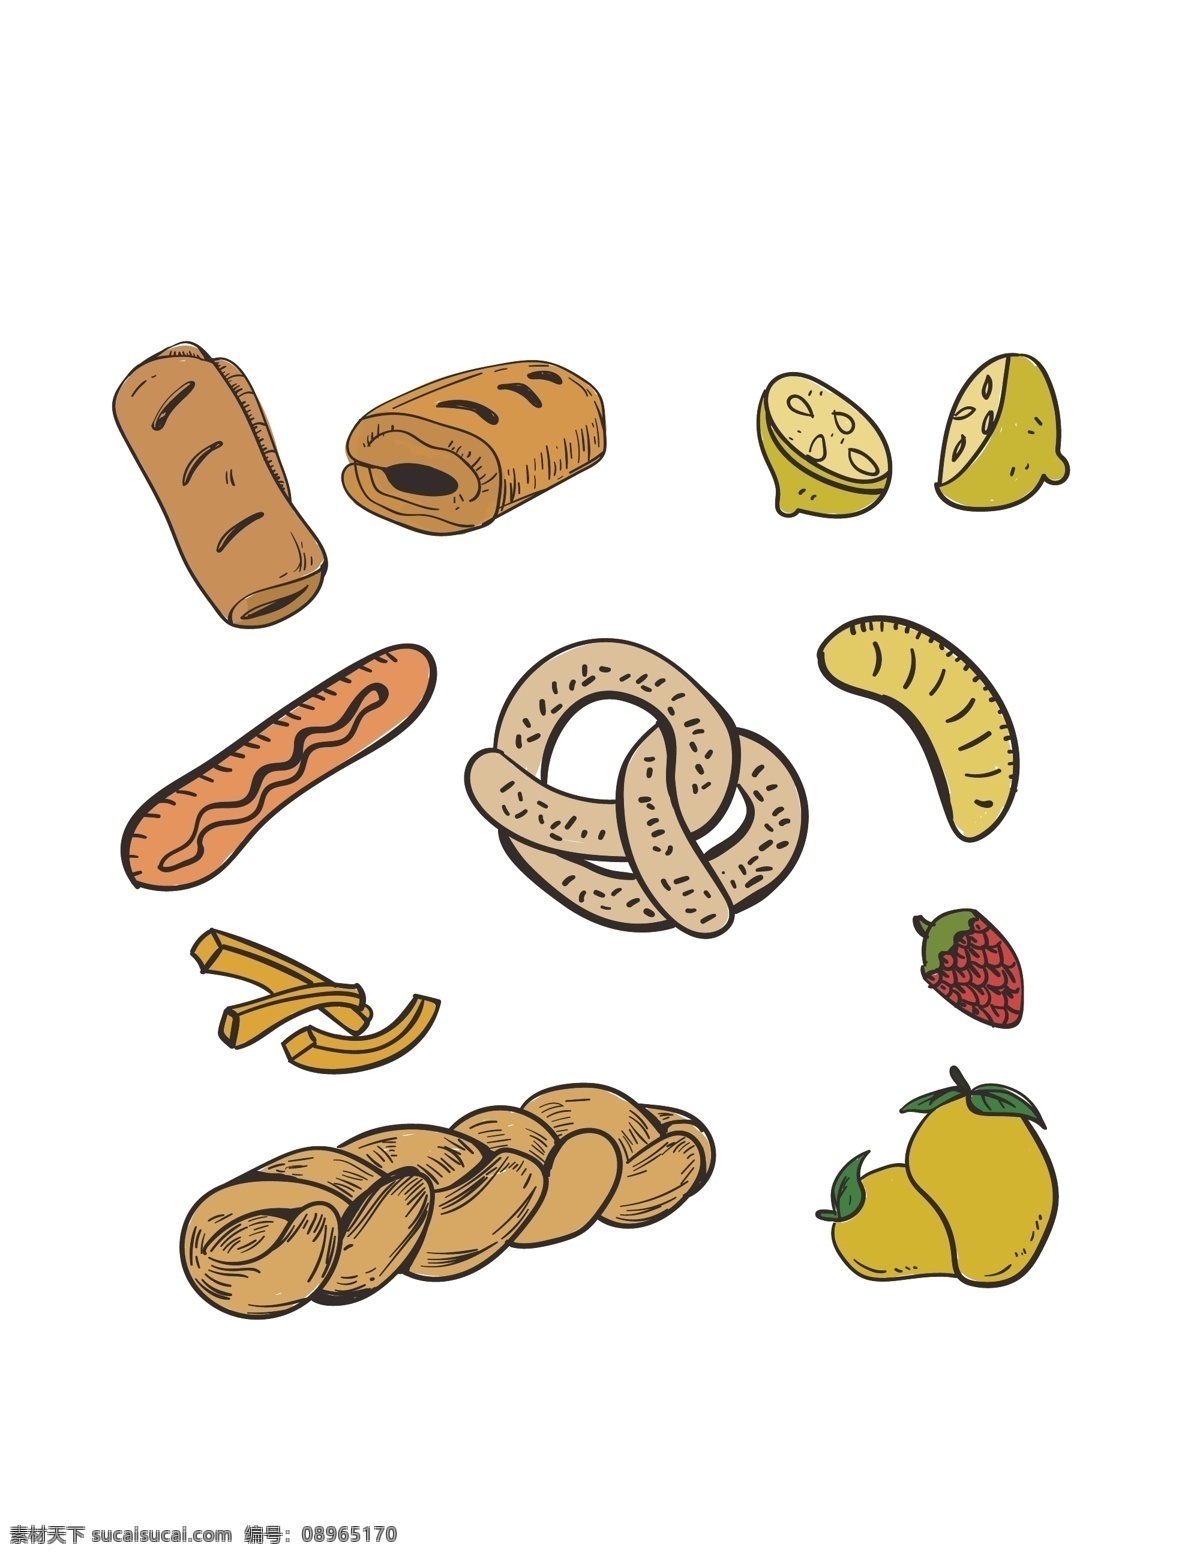 美食 手绘 素 素材图片 美食手绘素材 食物 食品 线描 手绘元素 面点 糕点 面包 水果